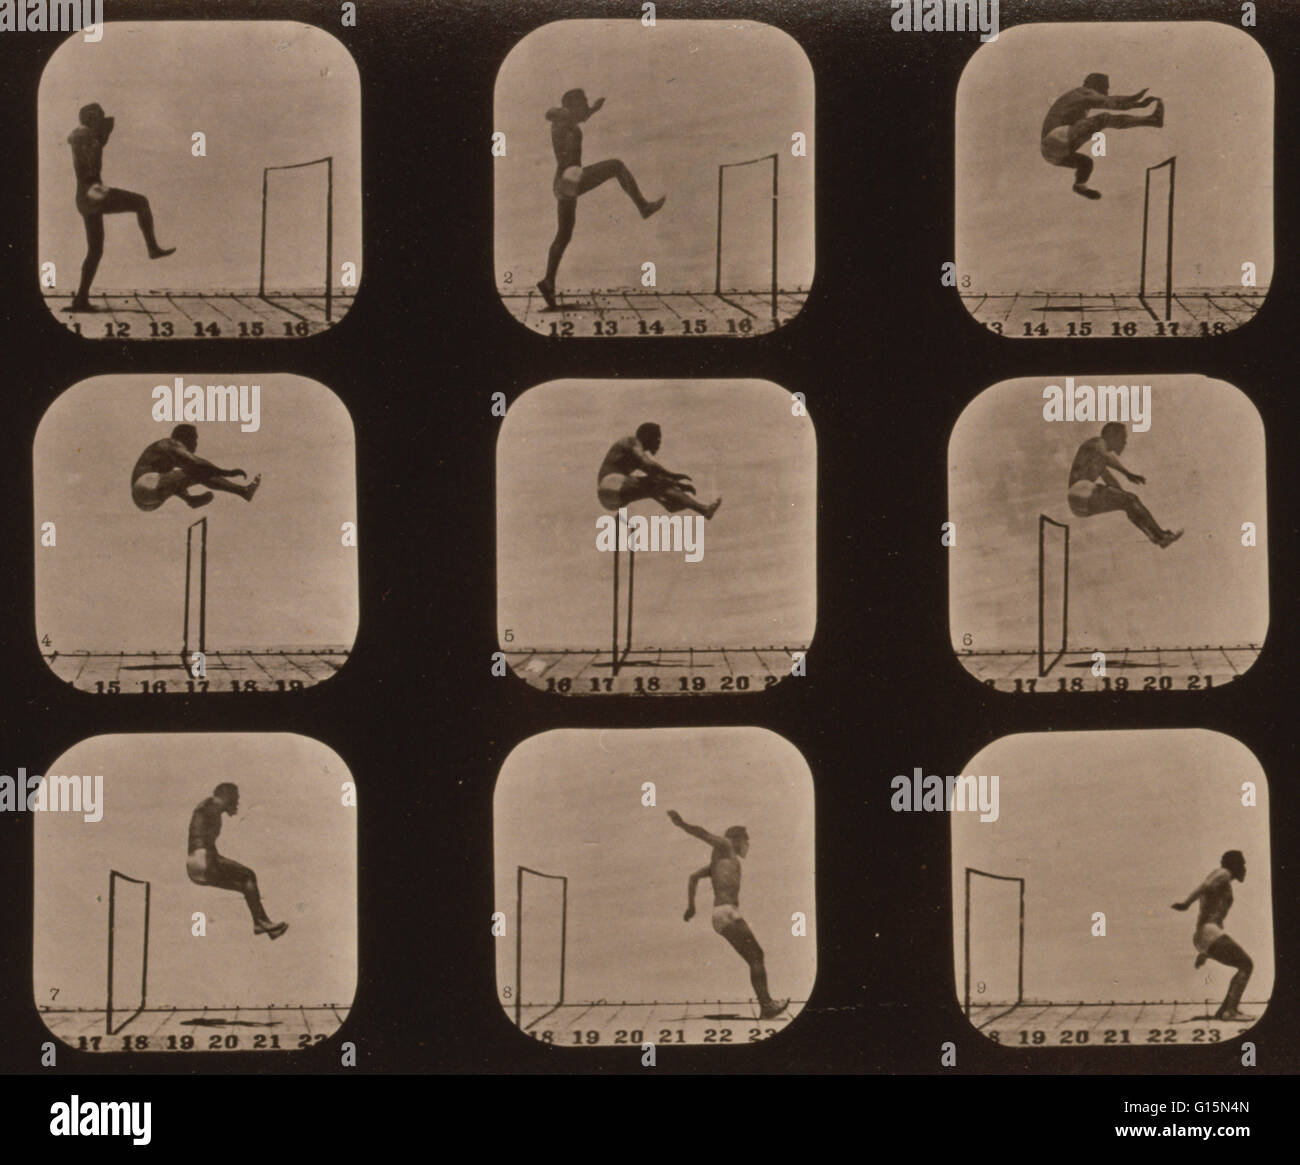 Muybridge menschlichen Fortbewegung, Mann springt Hürde, 1881. Foto zeigt 9 aufeinander folgenden Bilder von einem Mann über eine Hürde springen. Eadweard James Muybridge (9. April 1830 - 8. Mai 1904) war ein englischer Fotograf wichtig für seine Pionierarbeit in photographi Stockfoto